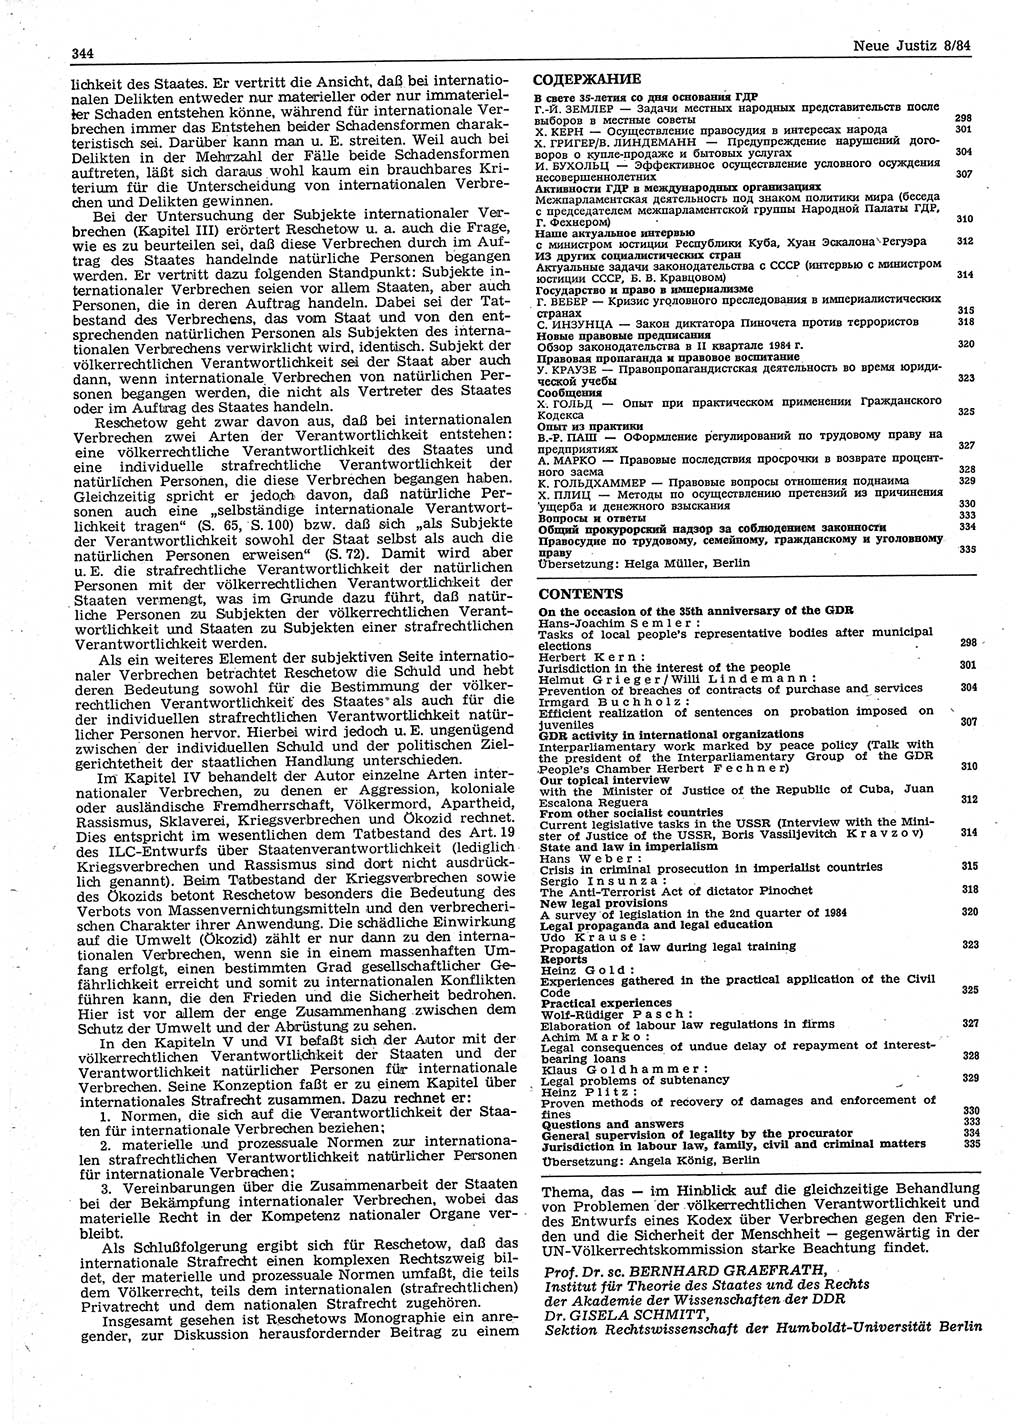 Neue Justiz (NJ), Zeitschrift für sozialistisches Recht und Gesetzlichkeit [Deutsche Demokratische Republik (DDR)], 38. Jahrgang 1984, Seite 344 (NJ DDR 1984, S. 344)